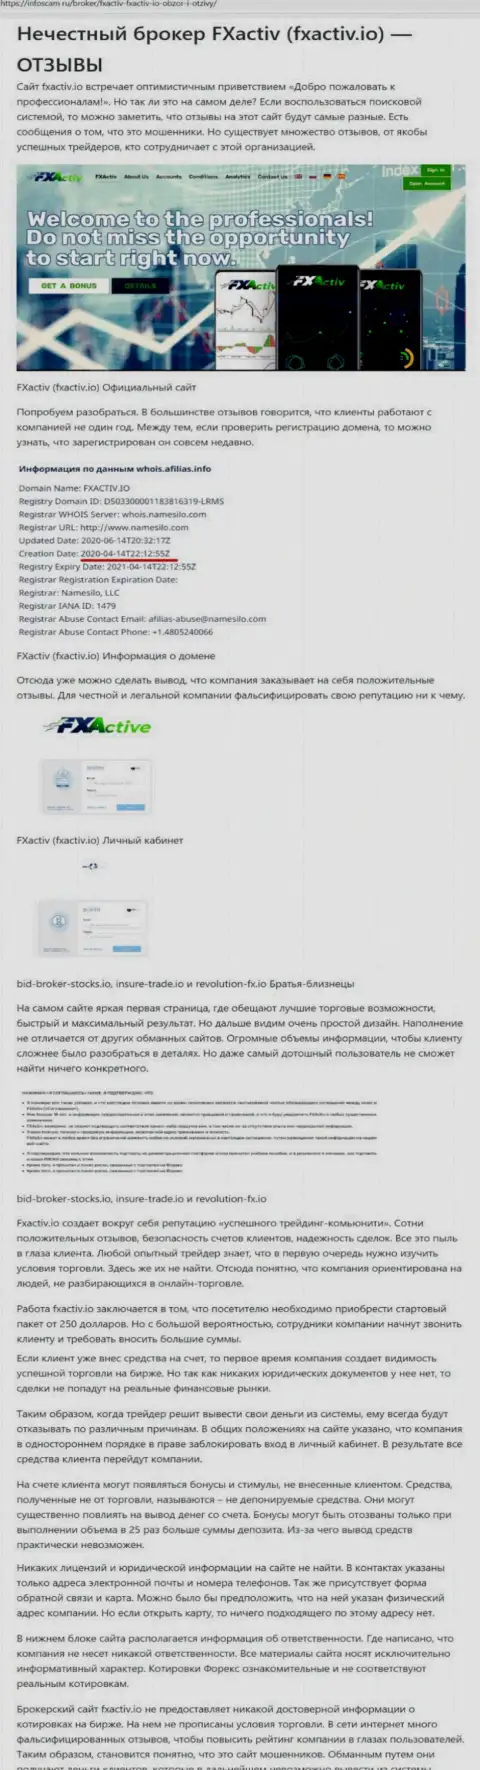 FXActiv - это противозаконно действующая компания, бесстыже обувает доверчивых людей (обзор афер internet-мошенников)